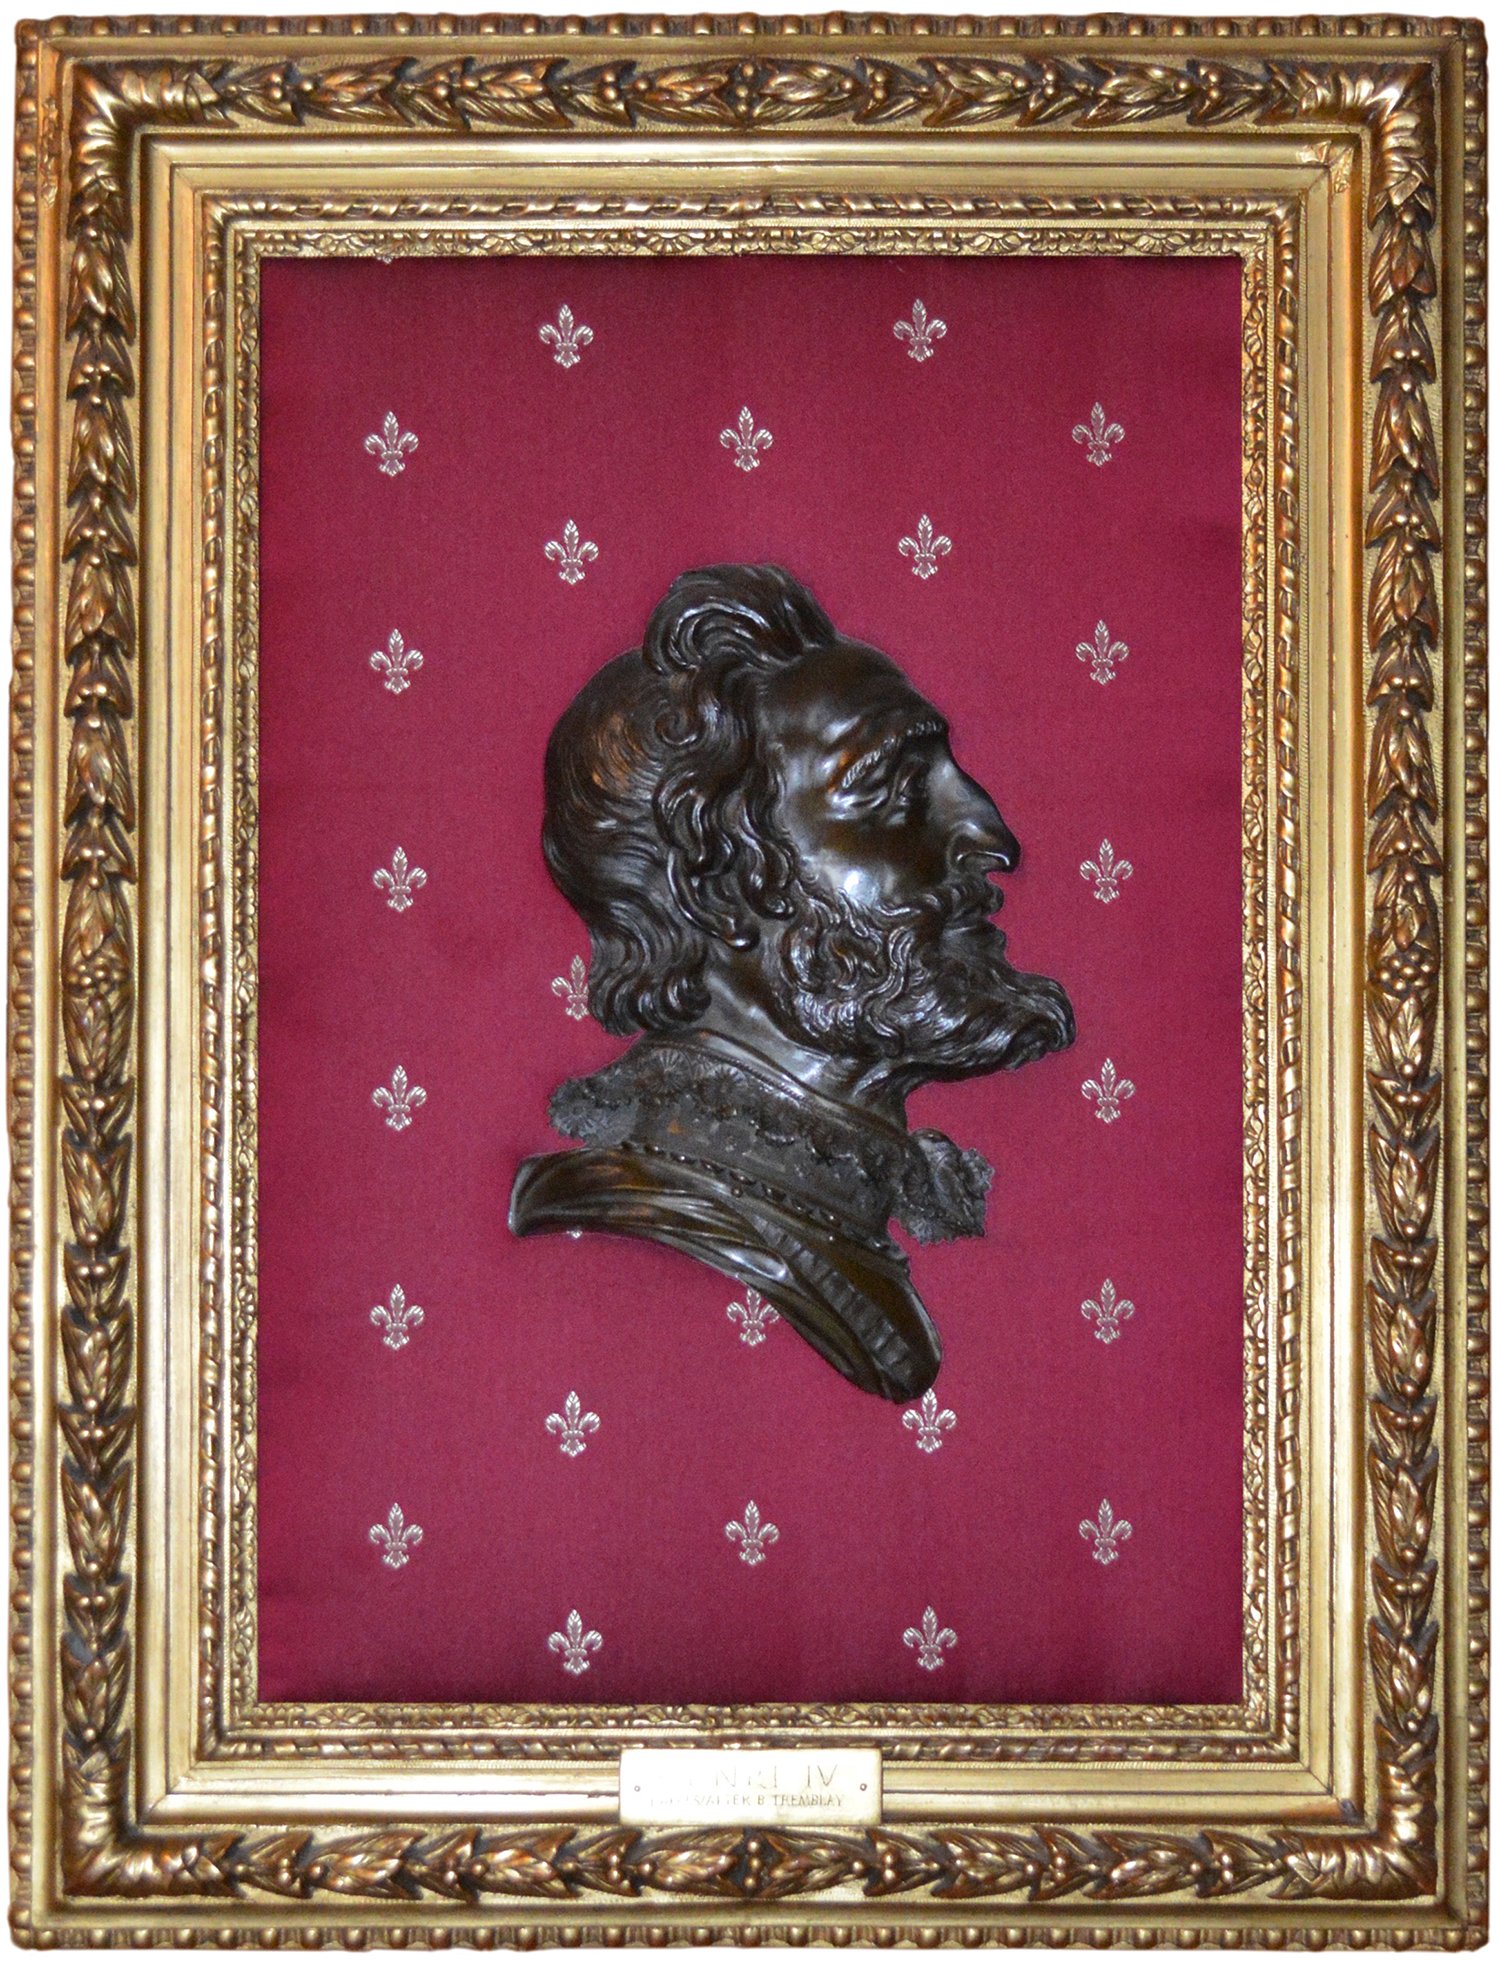 Un portrait de bronze du roi Henri IV orne les murs du Salon de la Francophonie. Le roi Henri IV a rebâti l’économie française, affaiblie par 36 années de guerres civiles religieuses, et a personnellement financé plusieurs expéditions de l’explorateur Samuel de Champlain.